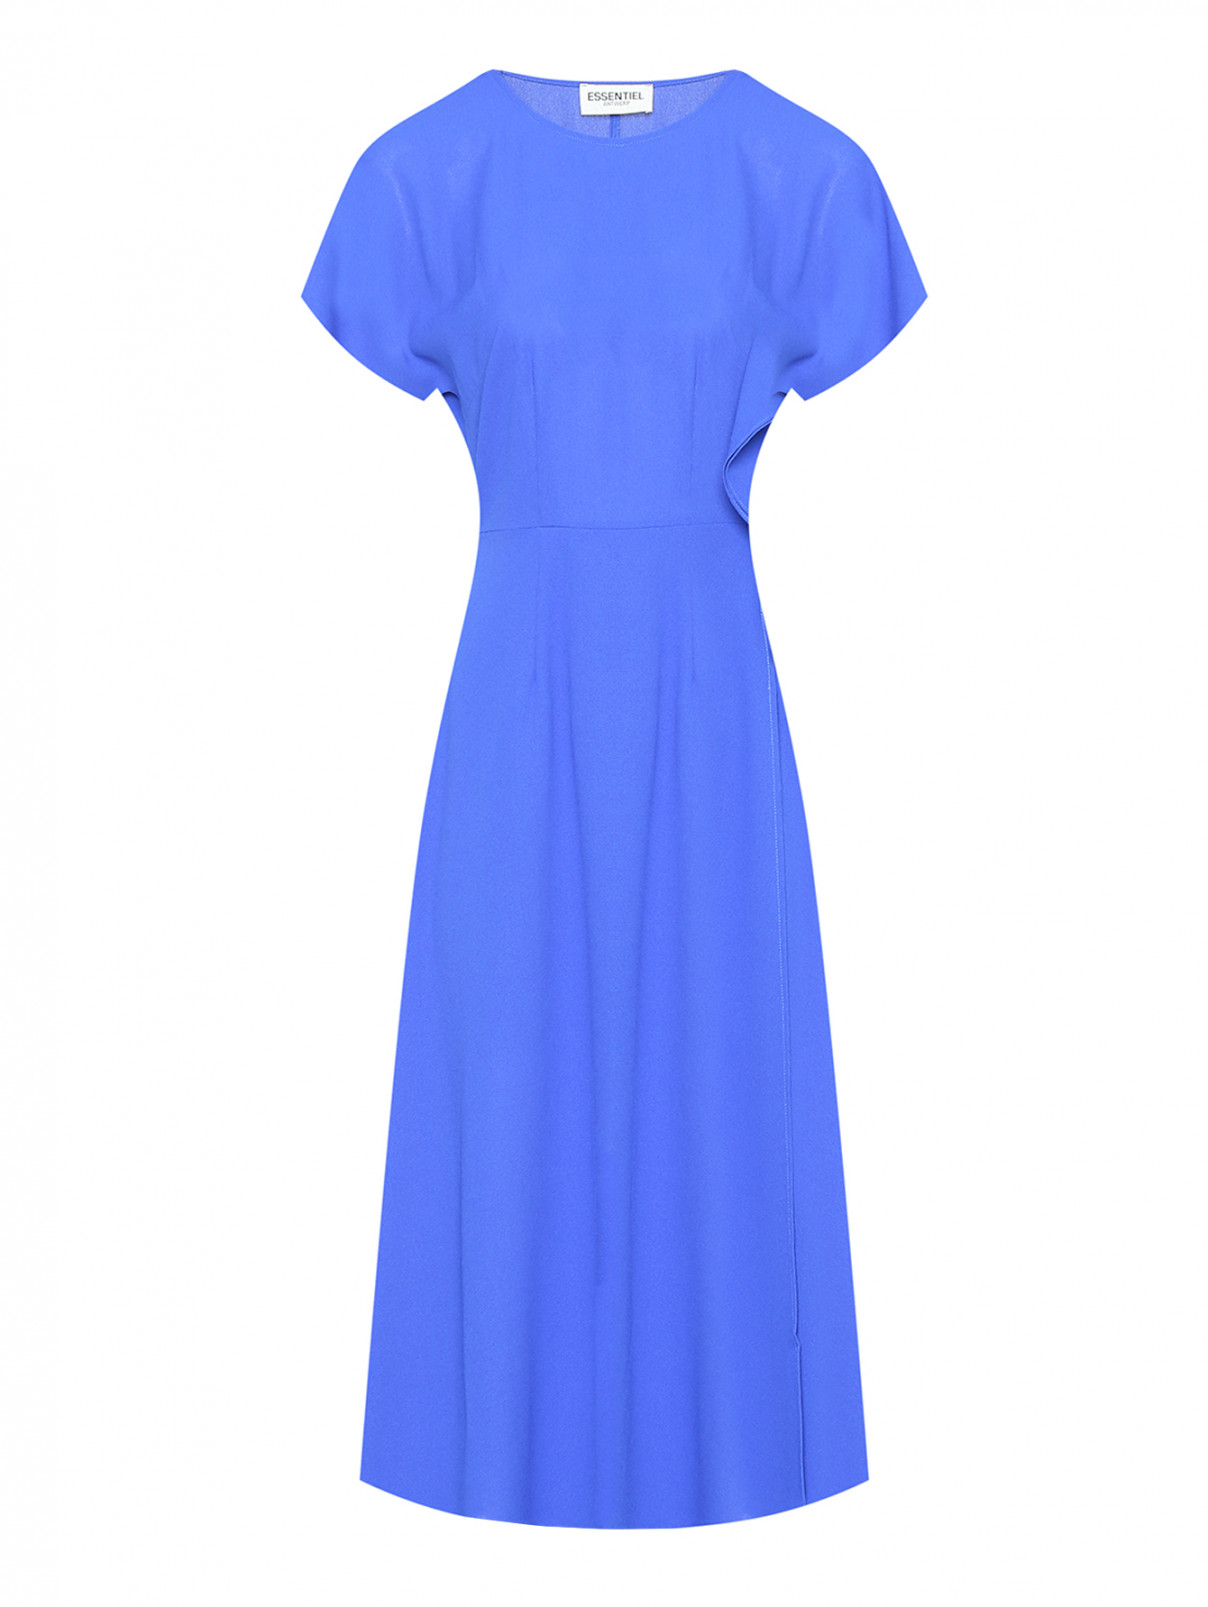 Однотонное платье с коротким рукавом Essentiel Antwerp  –  Общий вид  – Цвет:  Синий